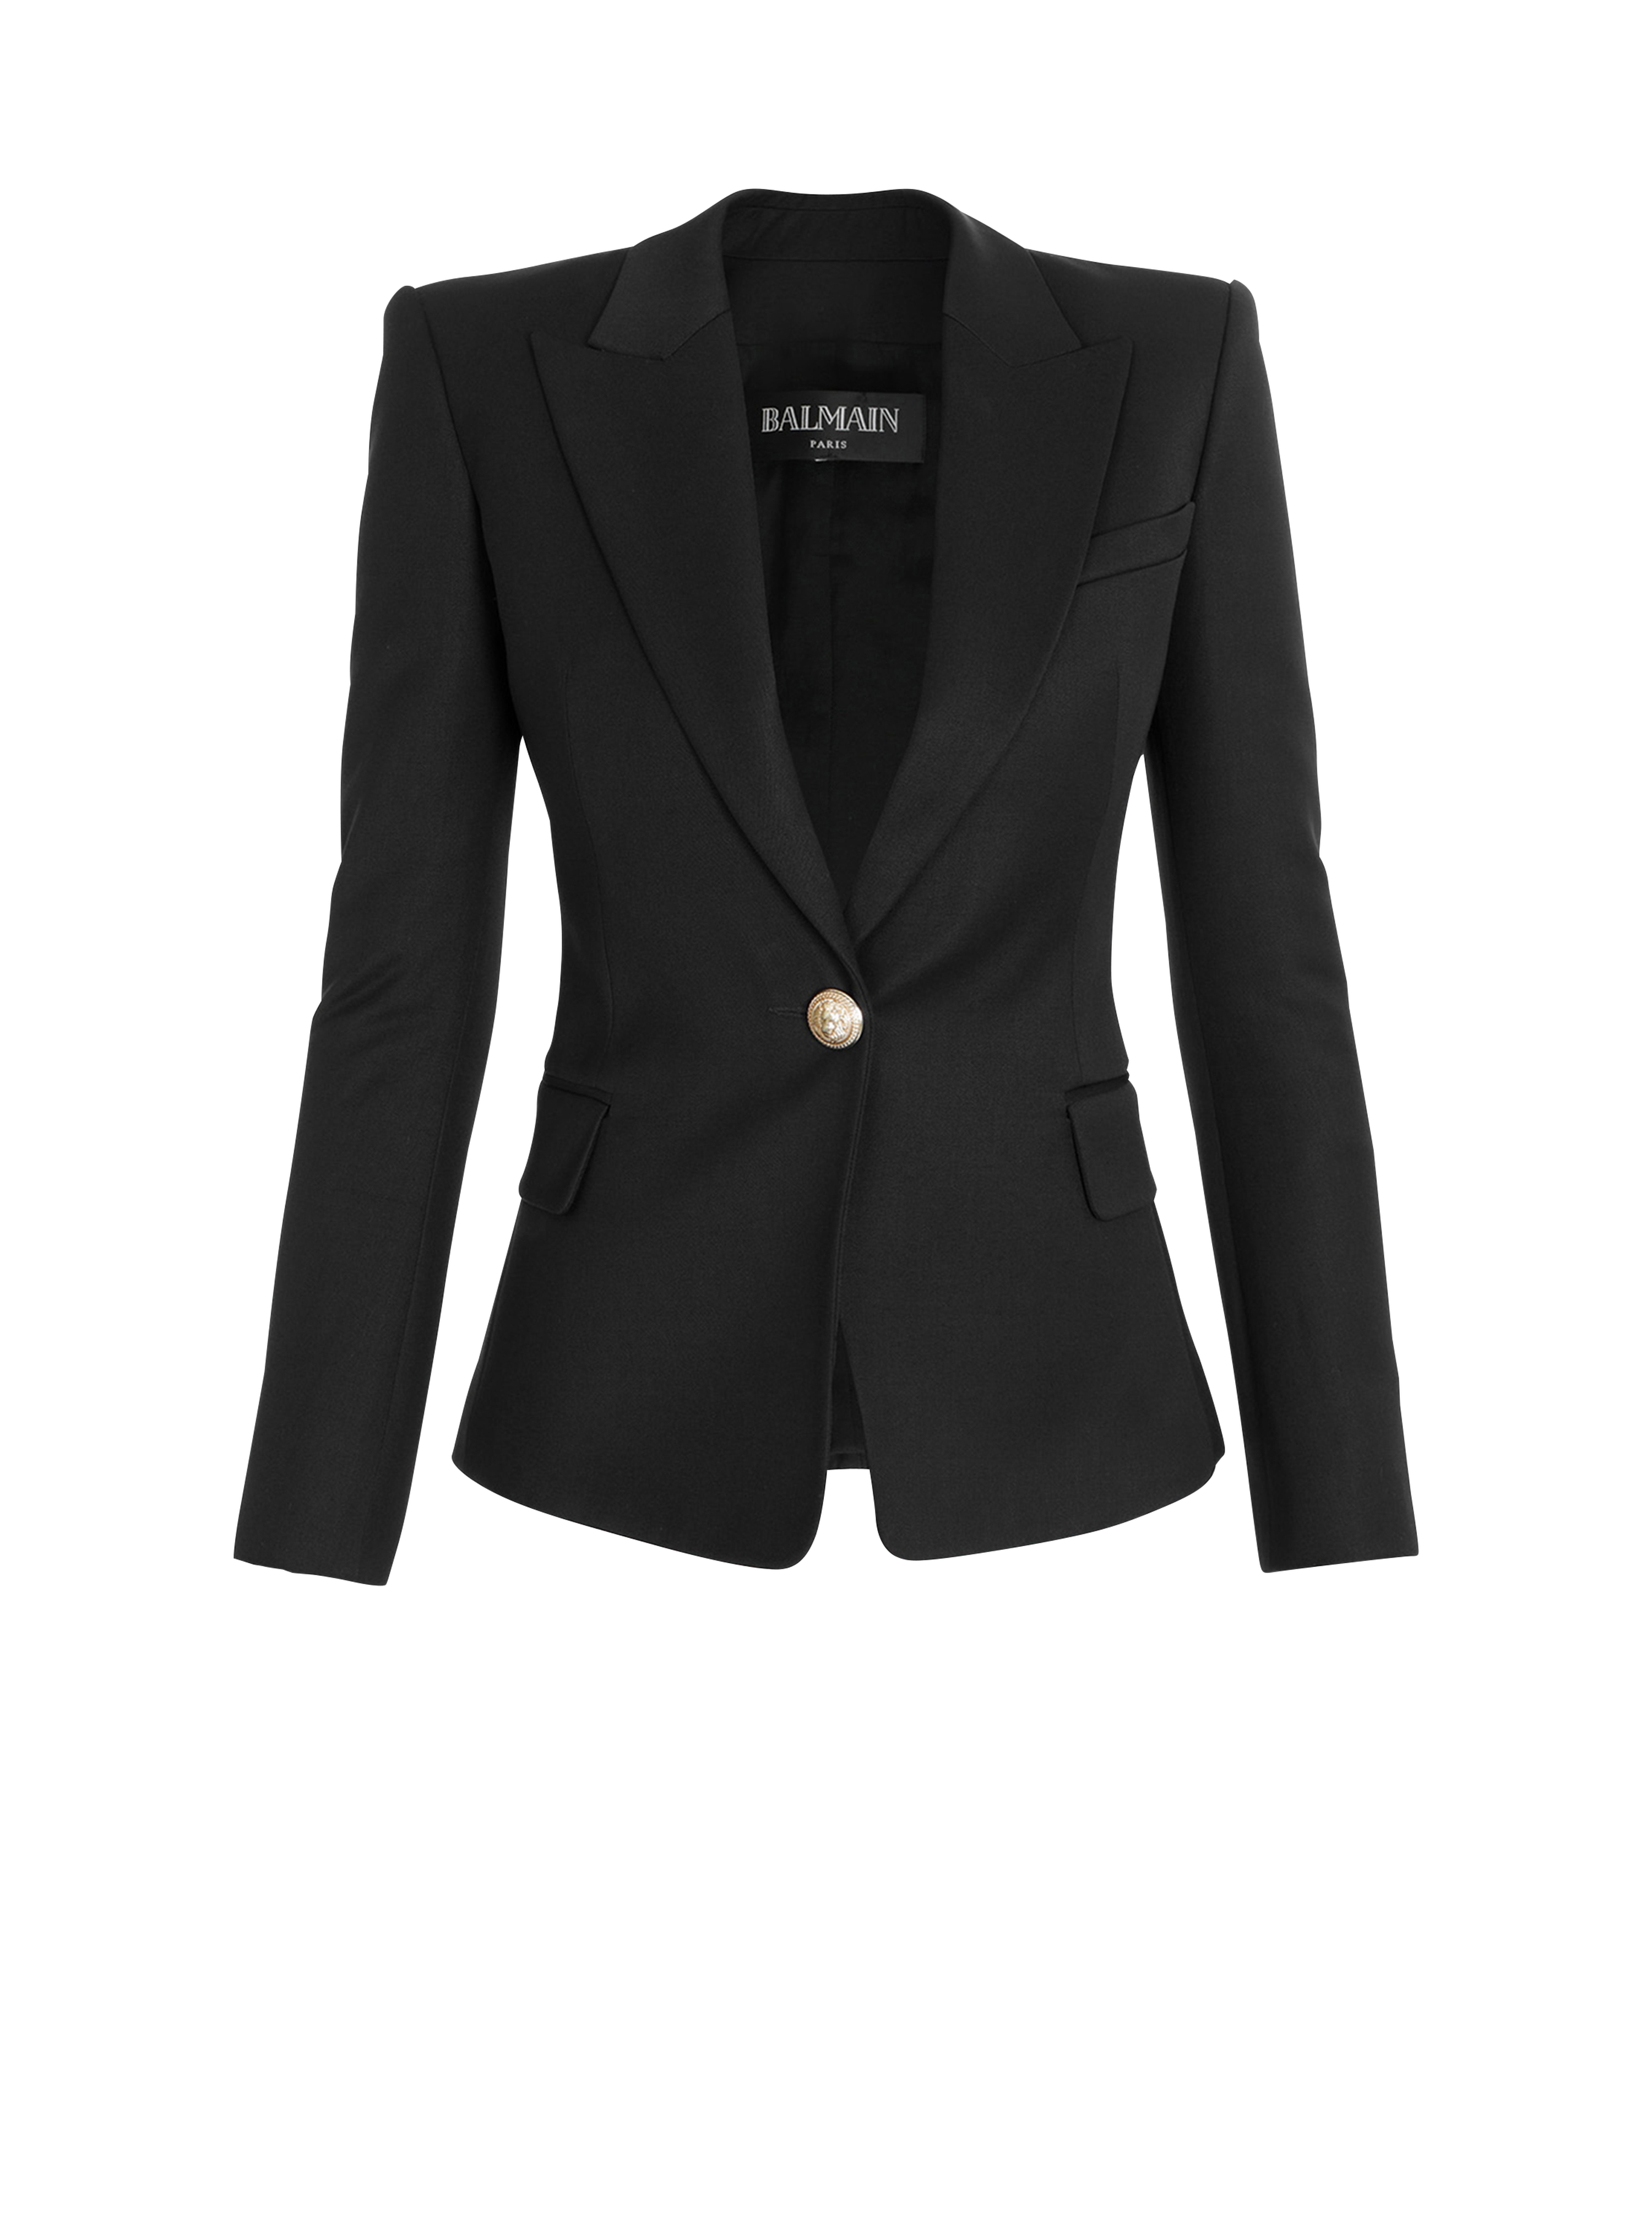 Wool single-button blazer, black